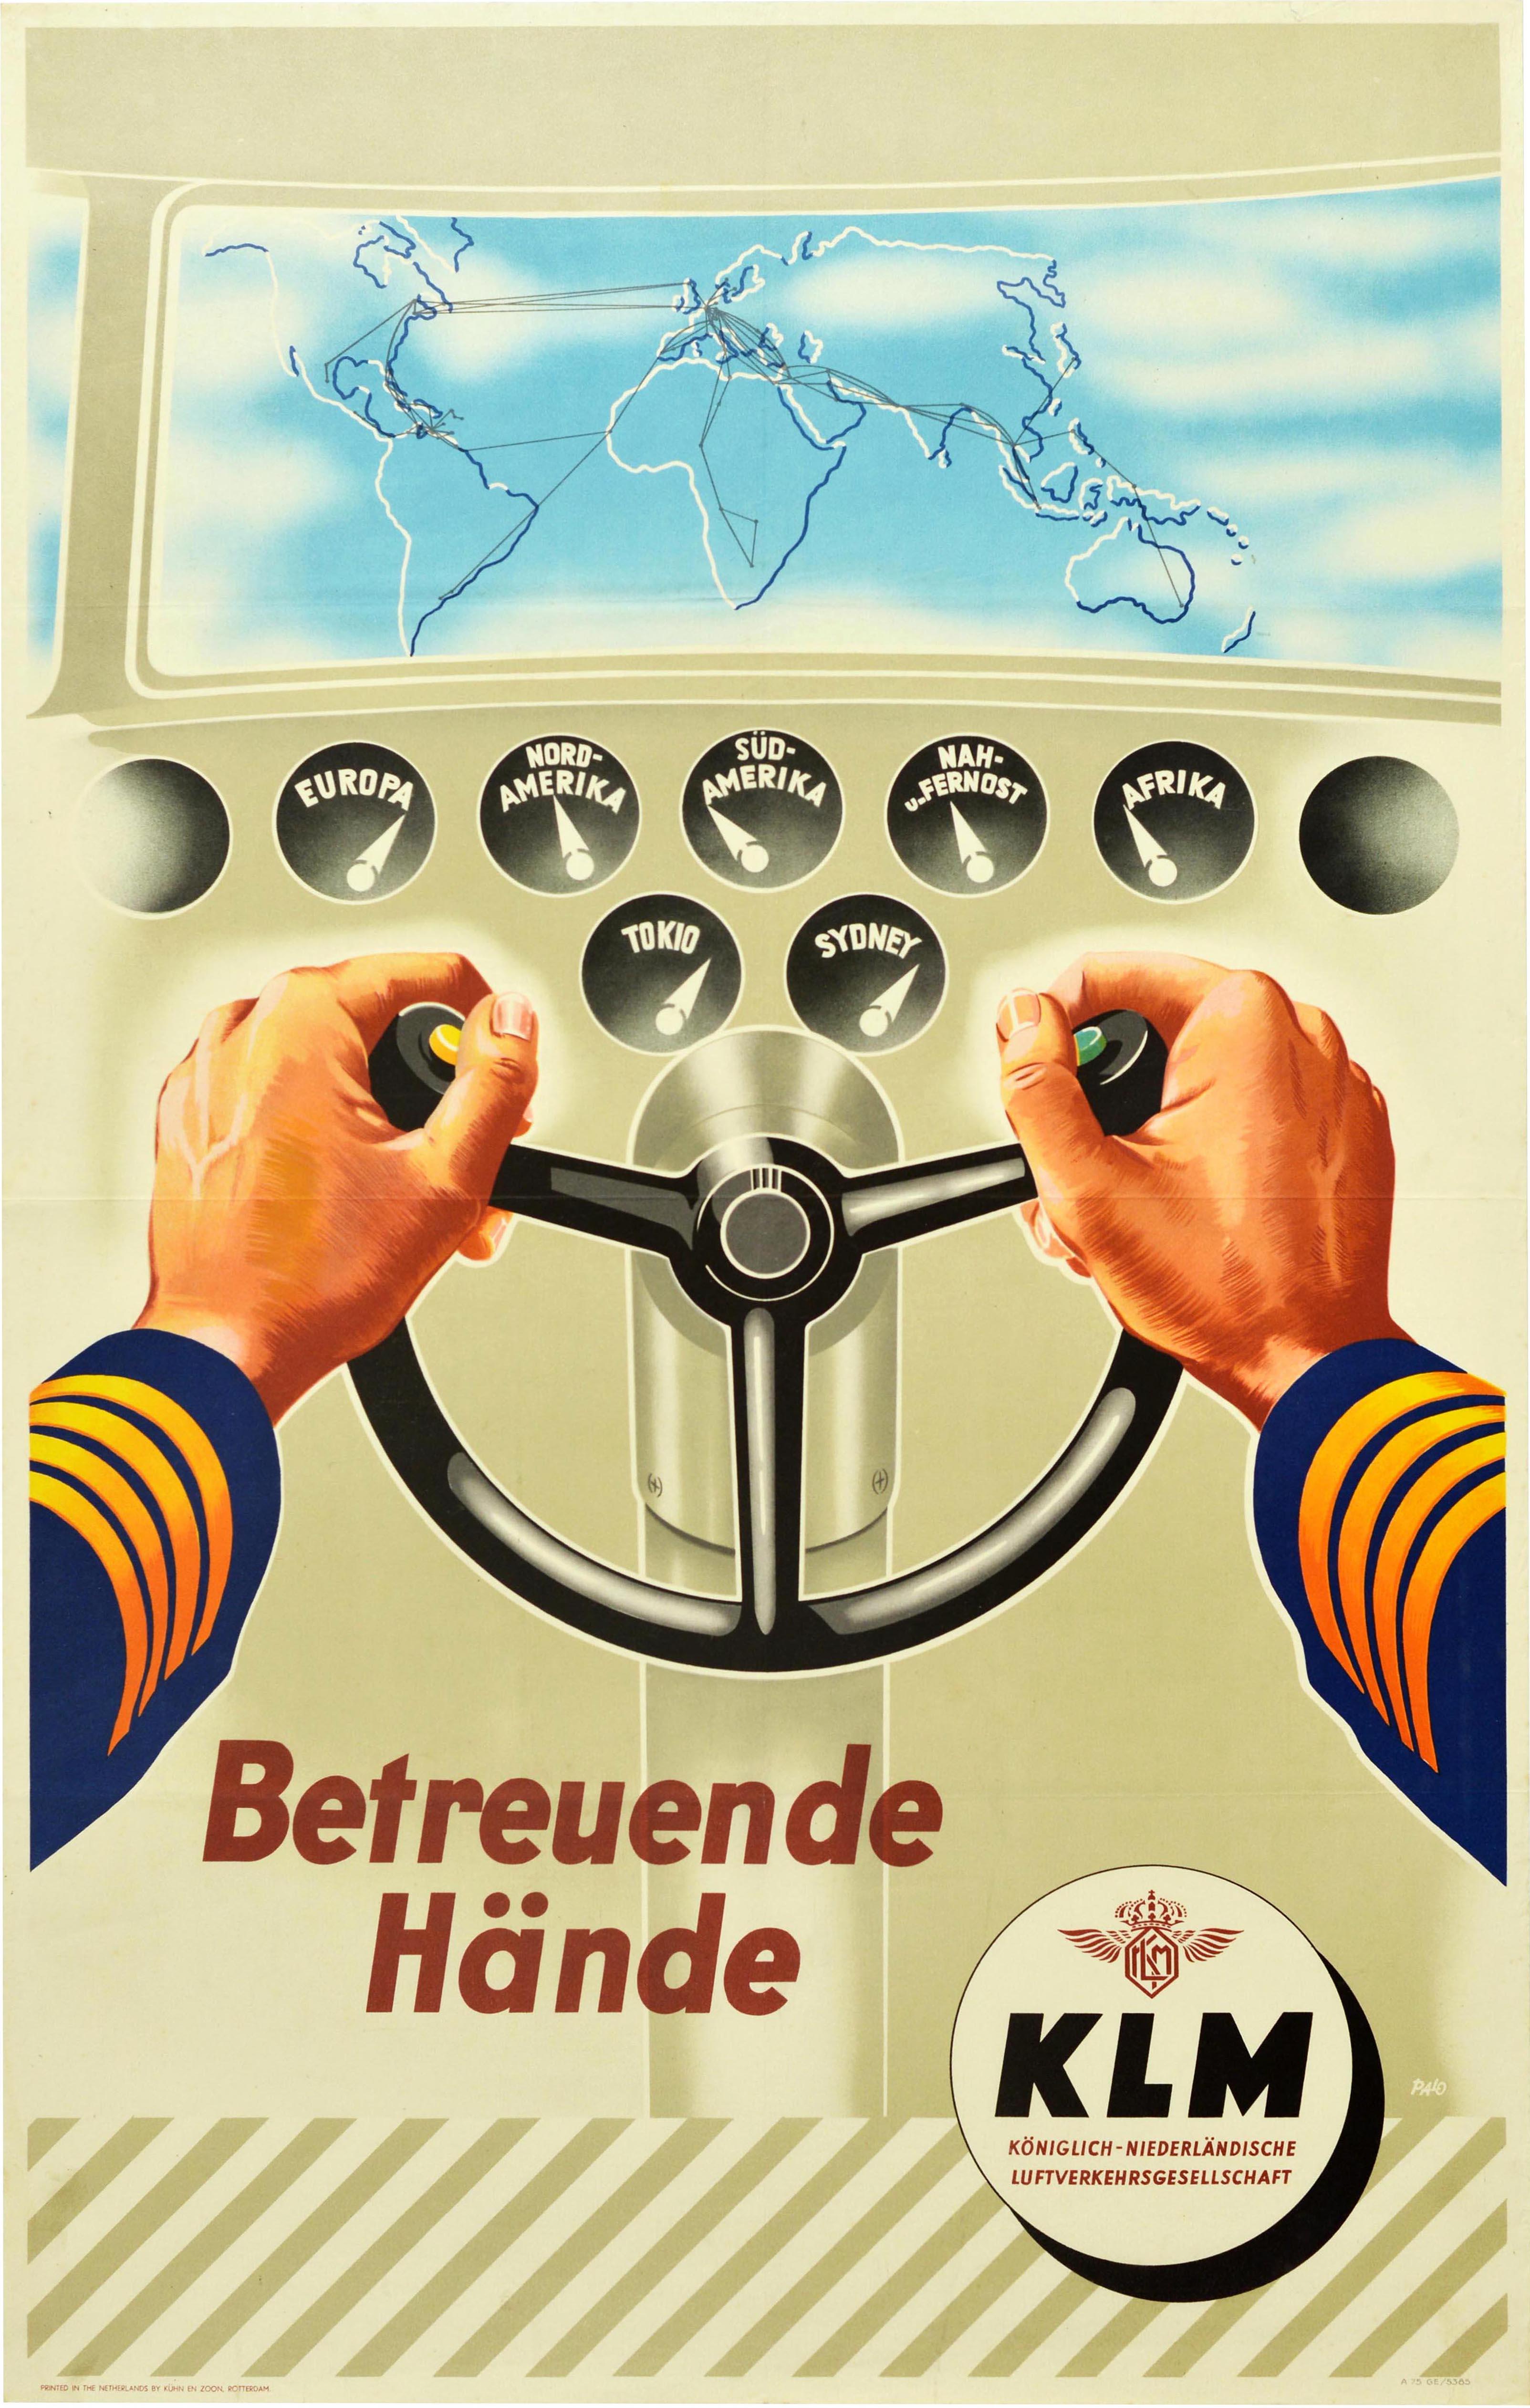 Affiche publicitaire originale et vintage de la compagnie aérienne KLM - Caring hands / Betreuende Hande - présentant un grand dessin montrant les bras d'un pilote en uniforme bleu et or tenant les commandes dans la cabine d'un avion avec une carte